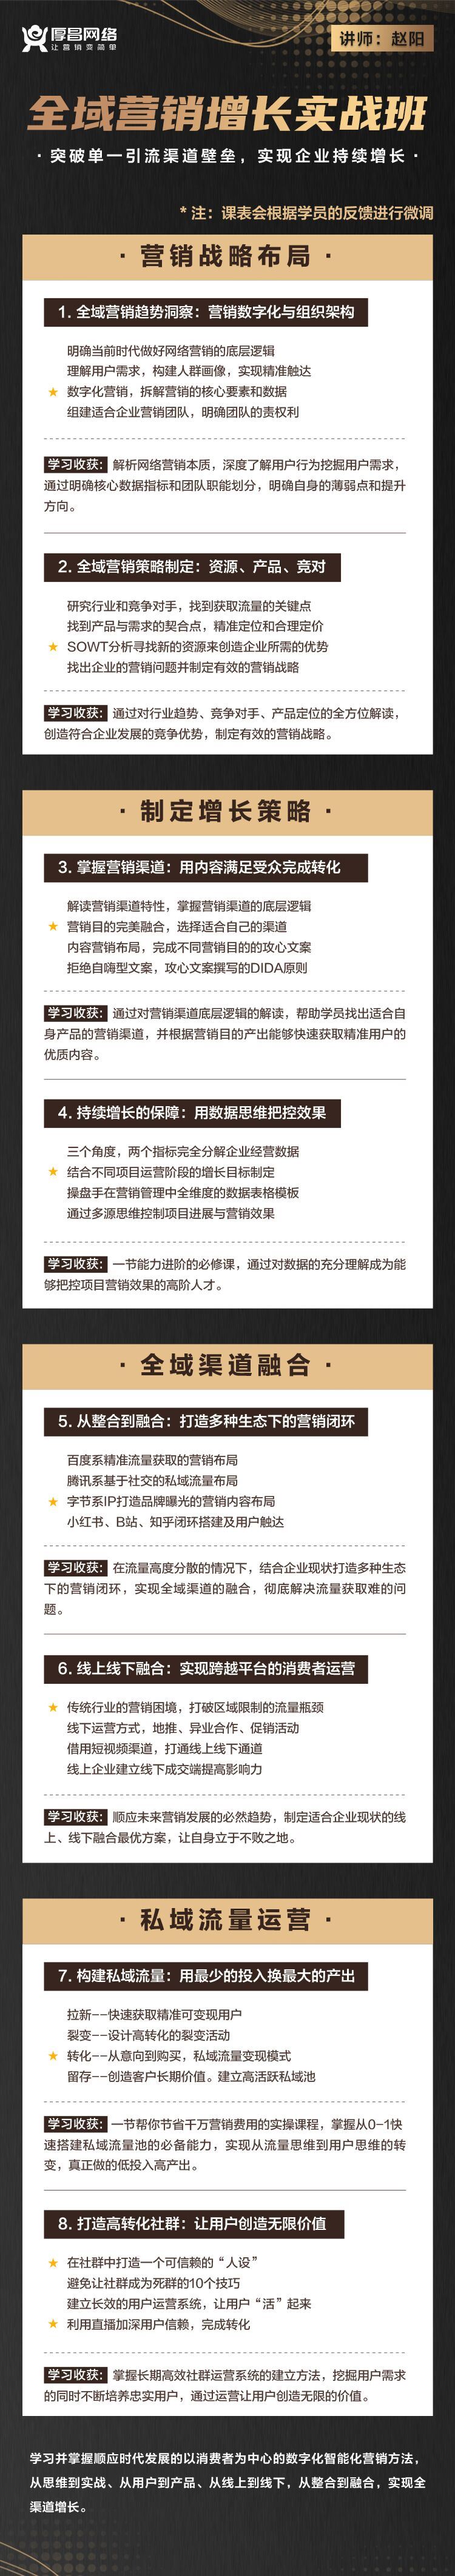 厚昌学院赵阳企业营销管理项目操盘手研修班2022培训课程视频12-13期